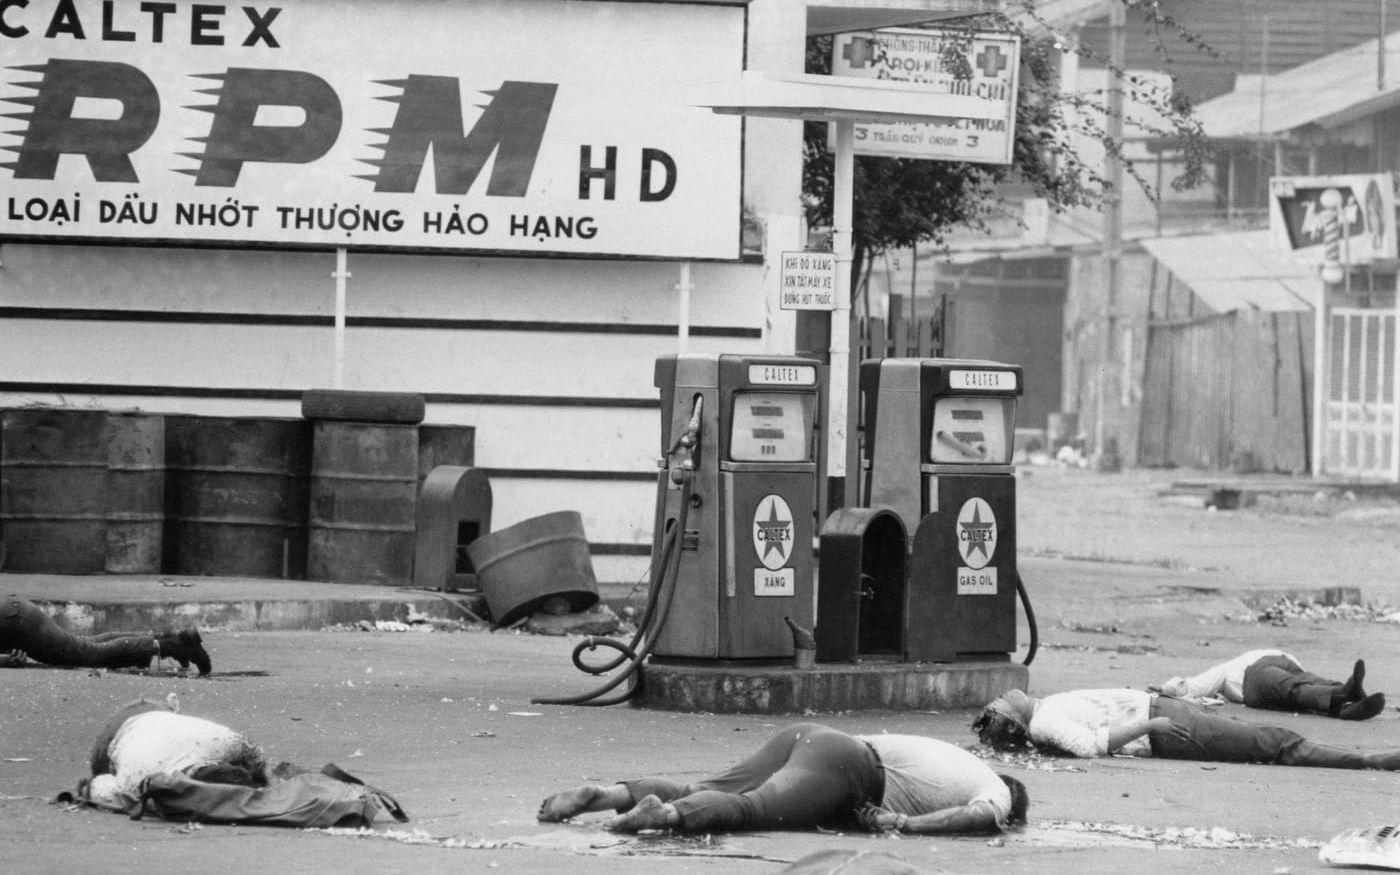 Kropparna av sju personer som avrättades av FNL ligger på gatan i Saigon, 9 februari 1968. Inför Tetoffensiven hade FNL gjort upp listor över personer som skulle avrättas i erövrade områden. Alla personerna har försetts med ögonbindlar. Arkivbild
